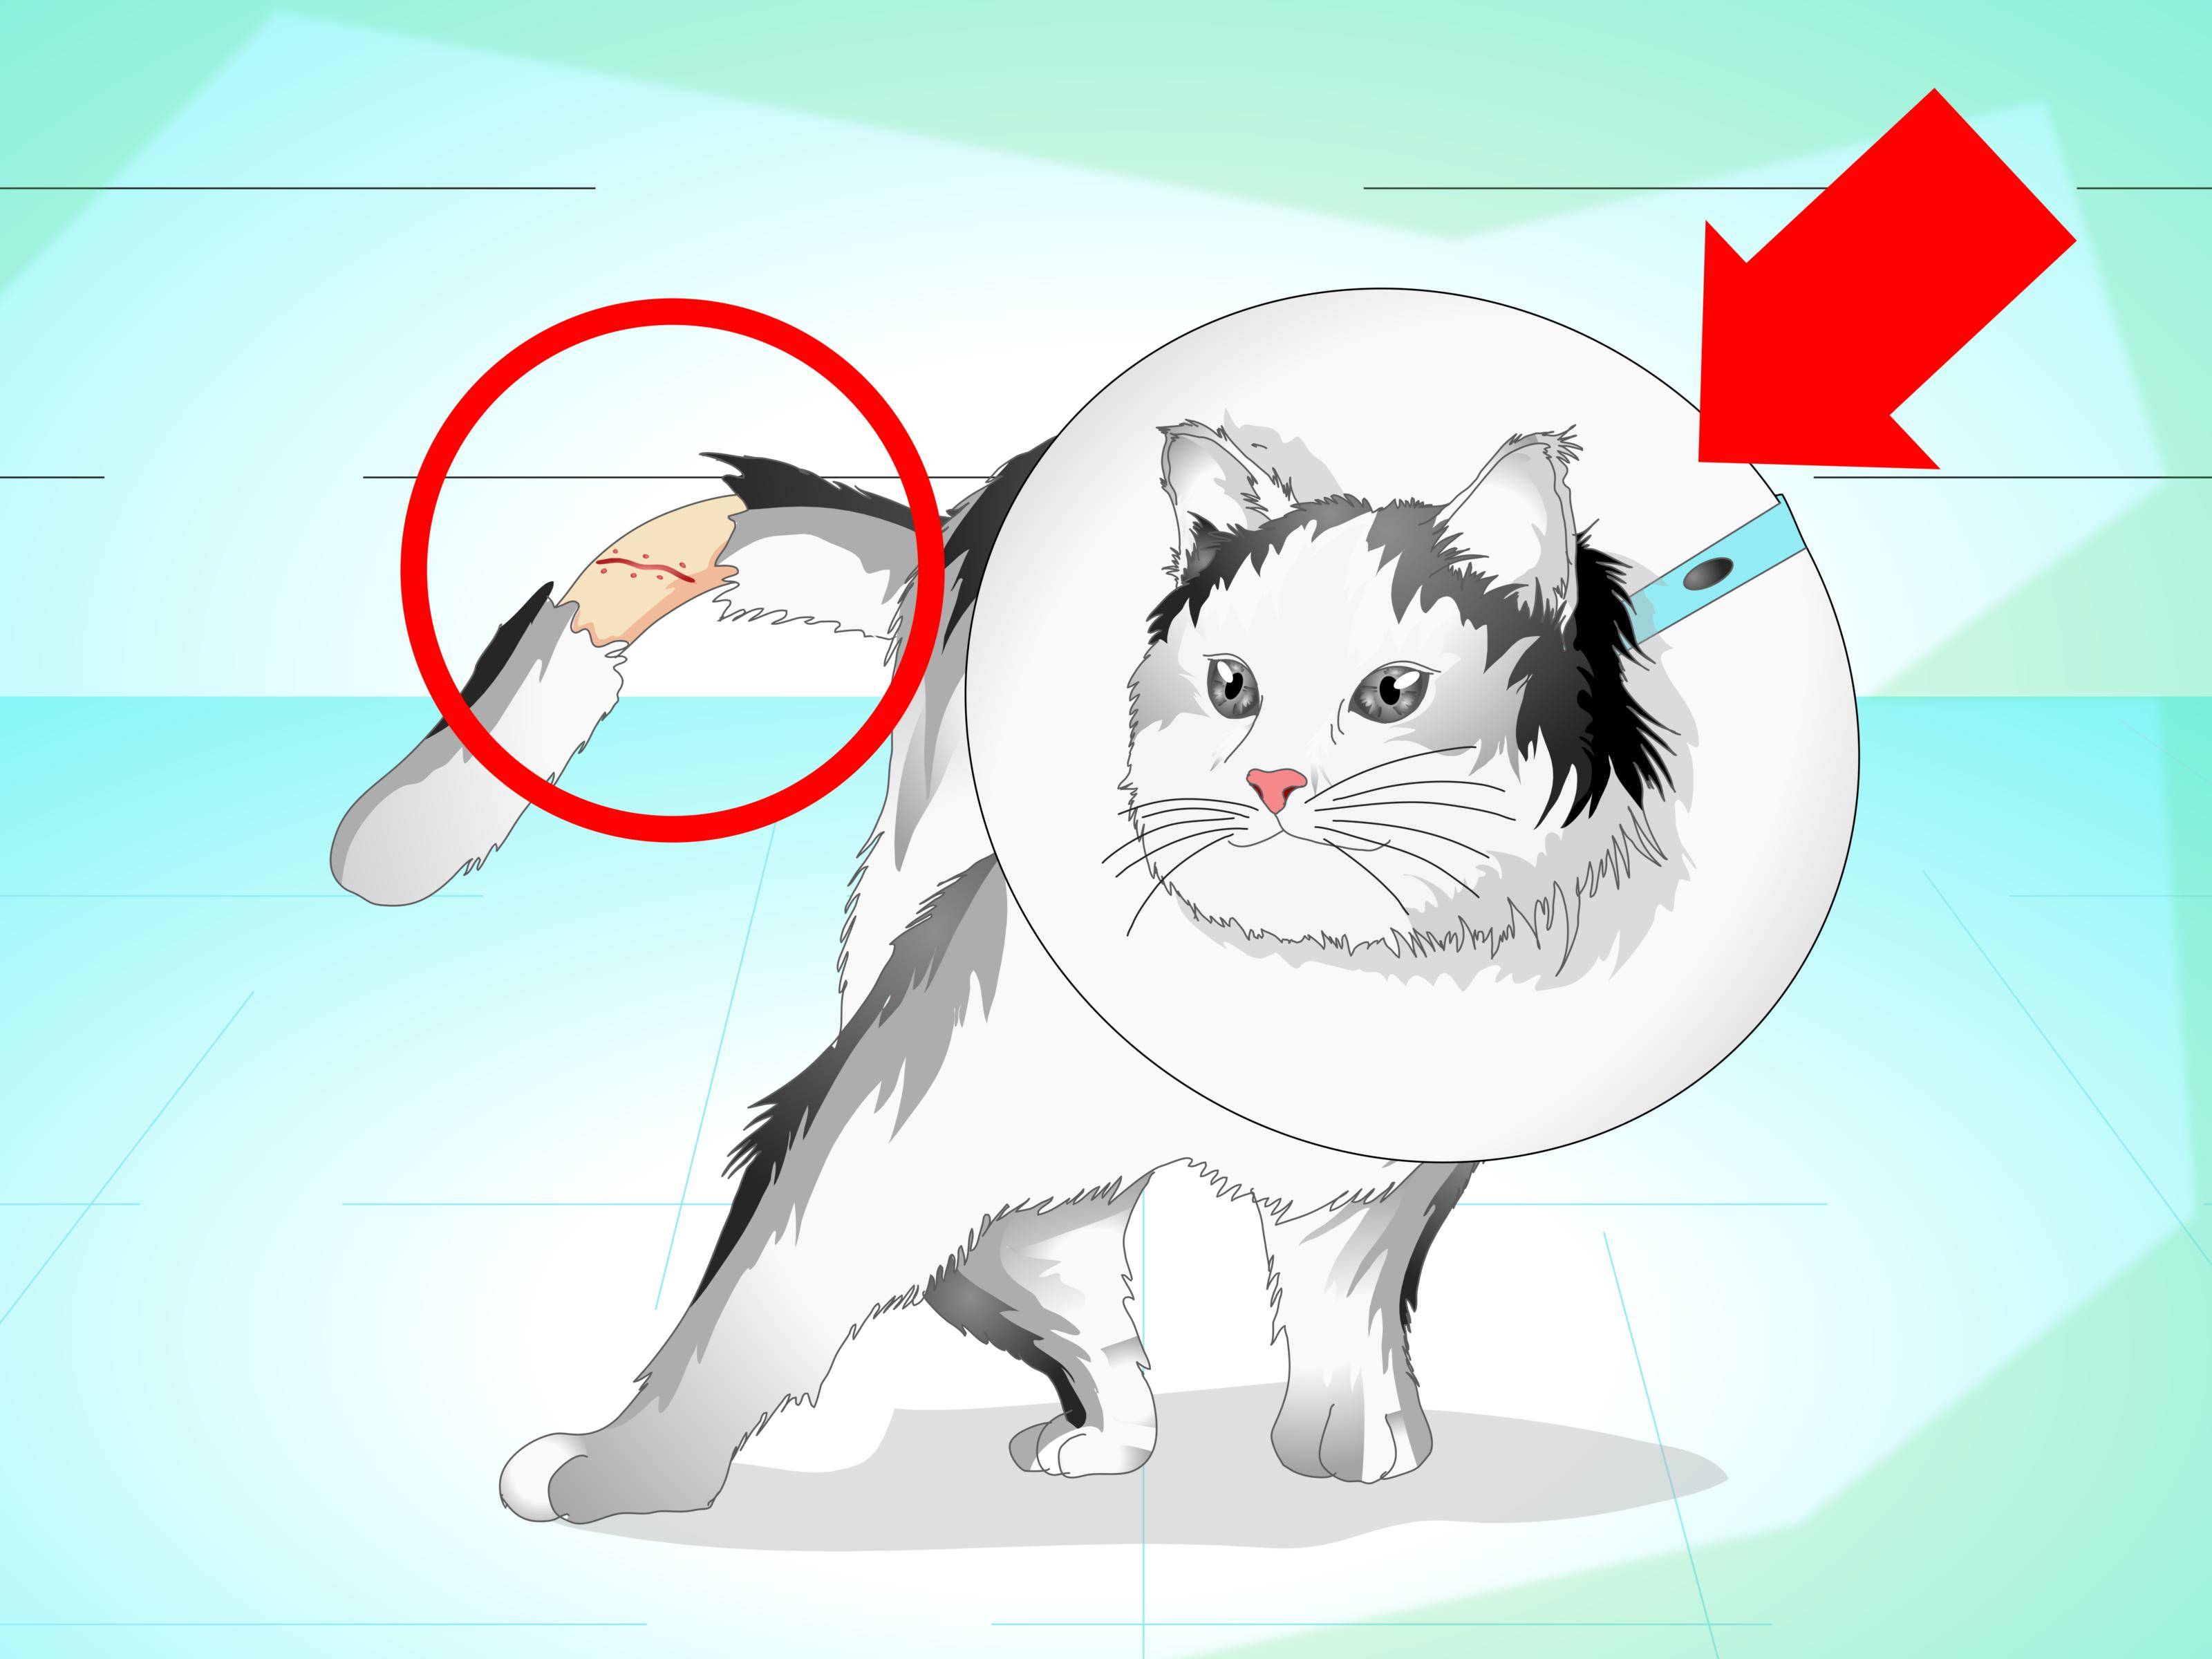 Зачем стригут кошек: почему нельзя и как часто можно подстригать котов